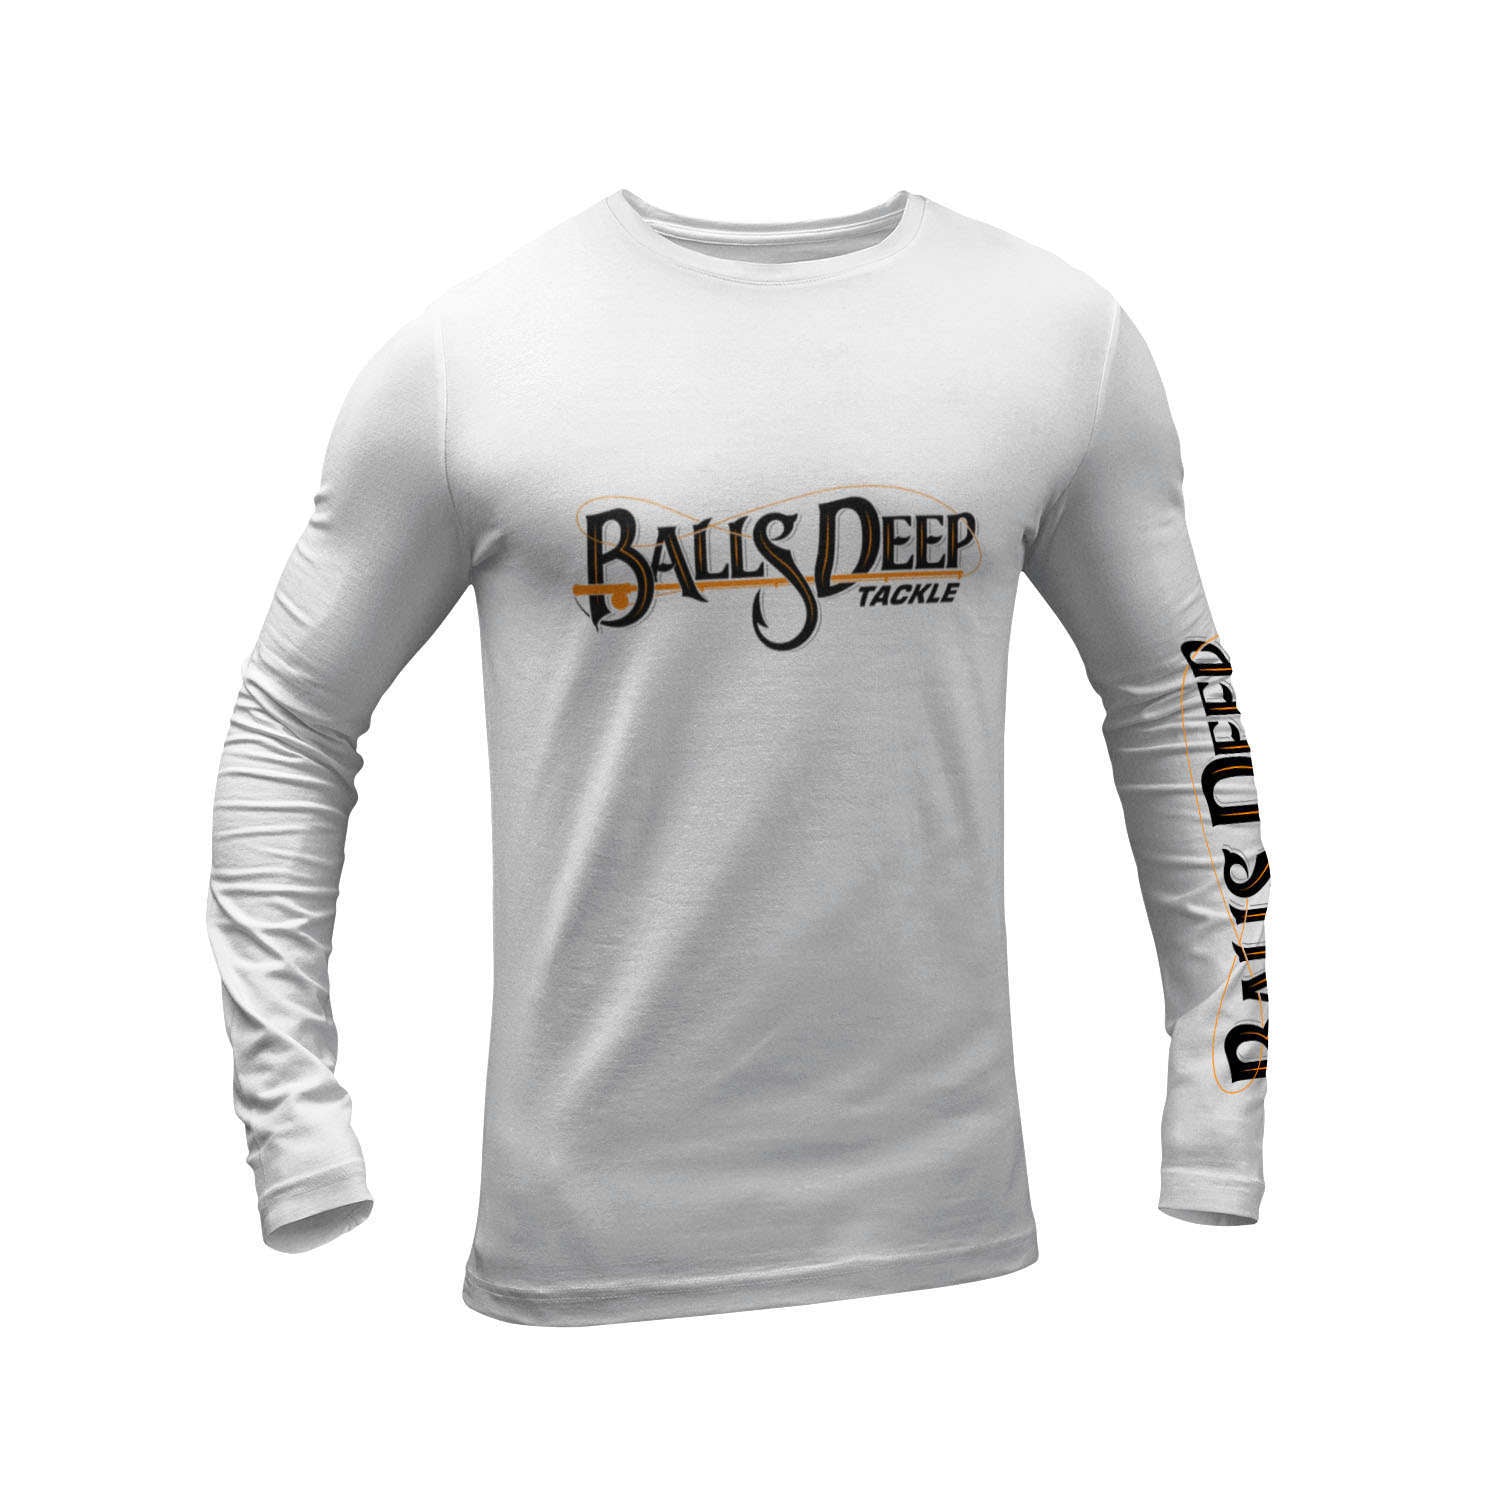 UPF-50 Fishing Shirt - Long Sleeve - 100% Polyester, Balls Deep Tackle